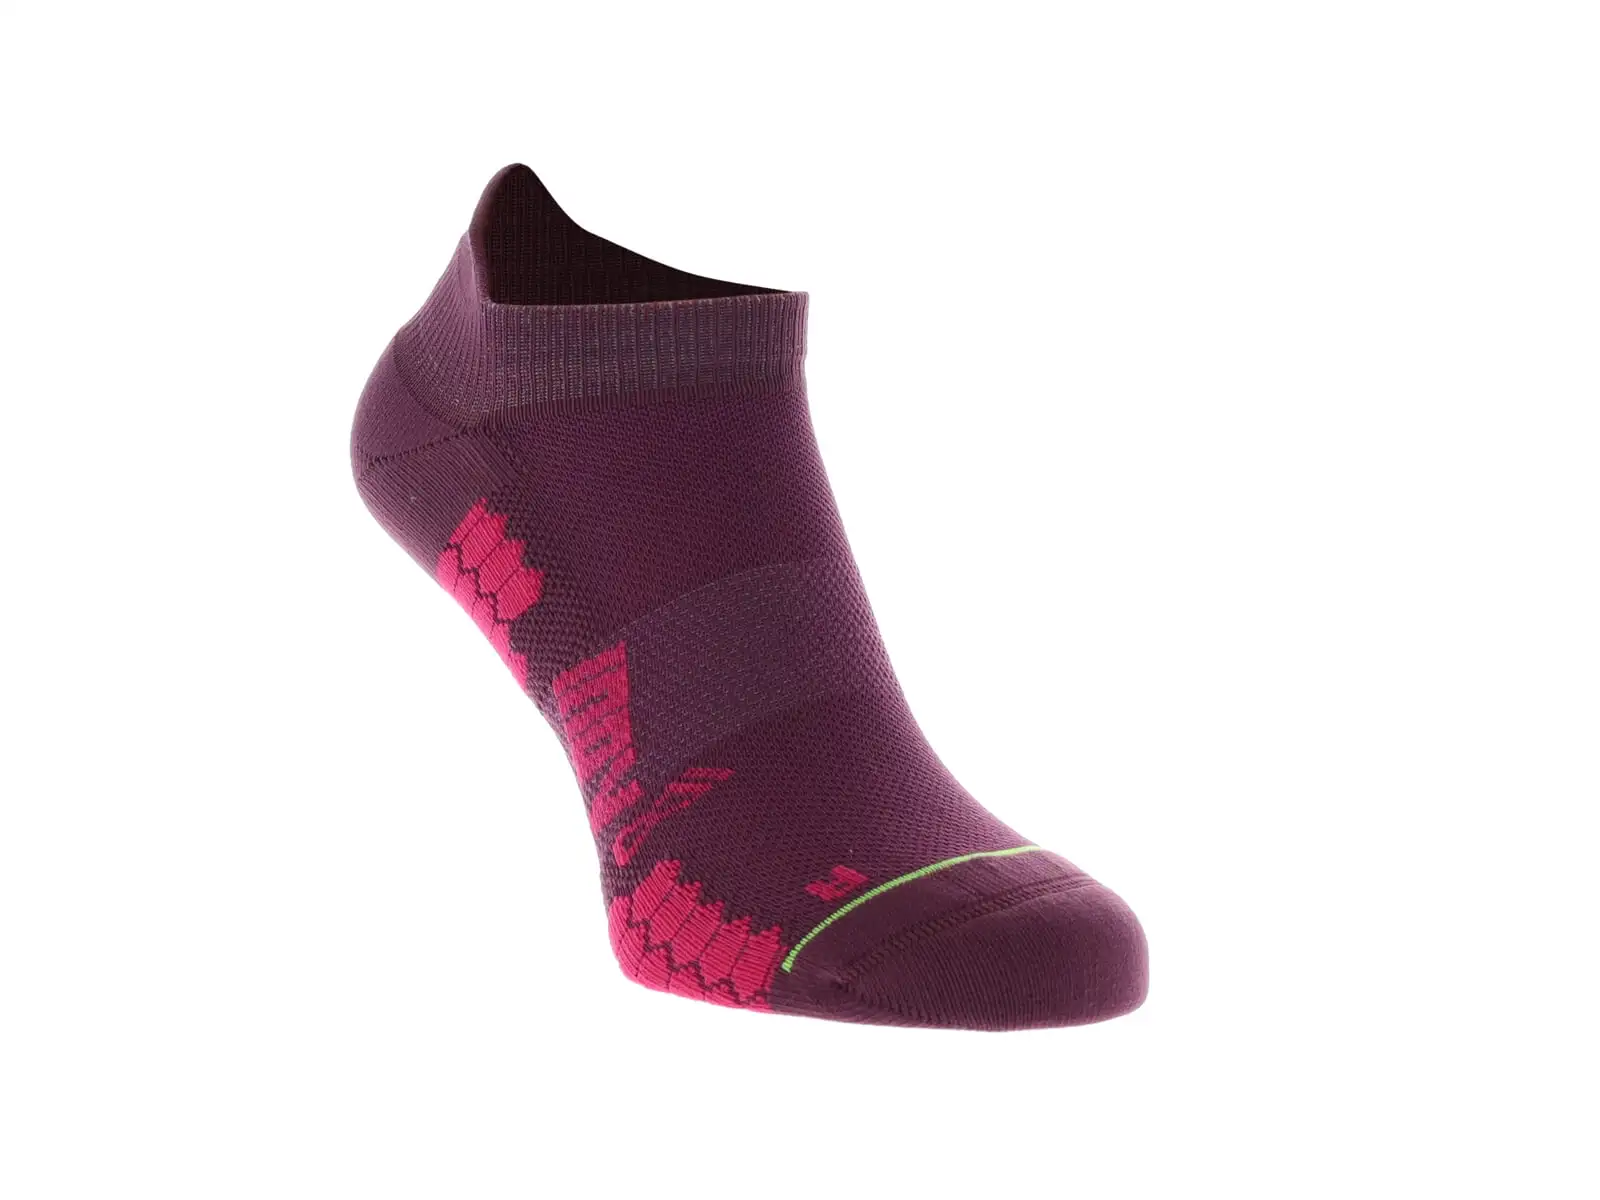 Inov-8 Trailfly ponožky nízké teal/fialová